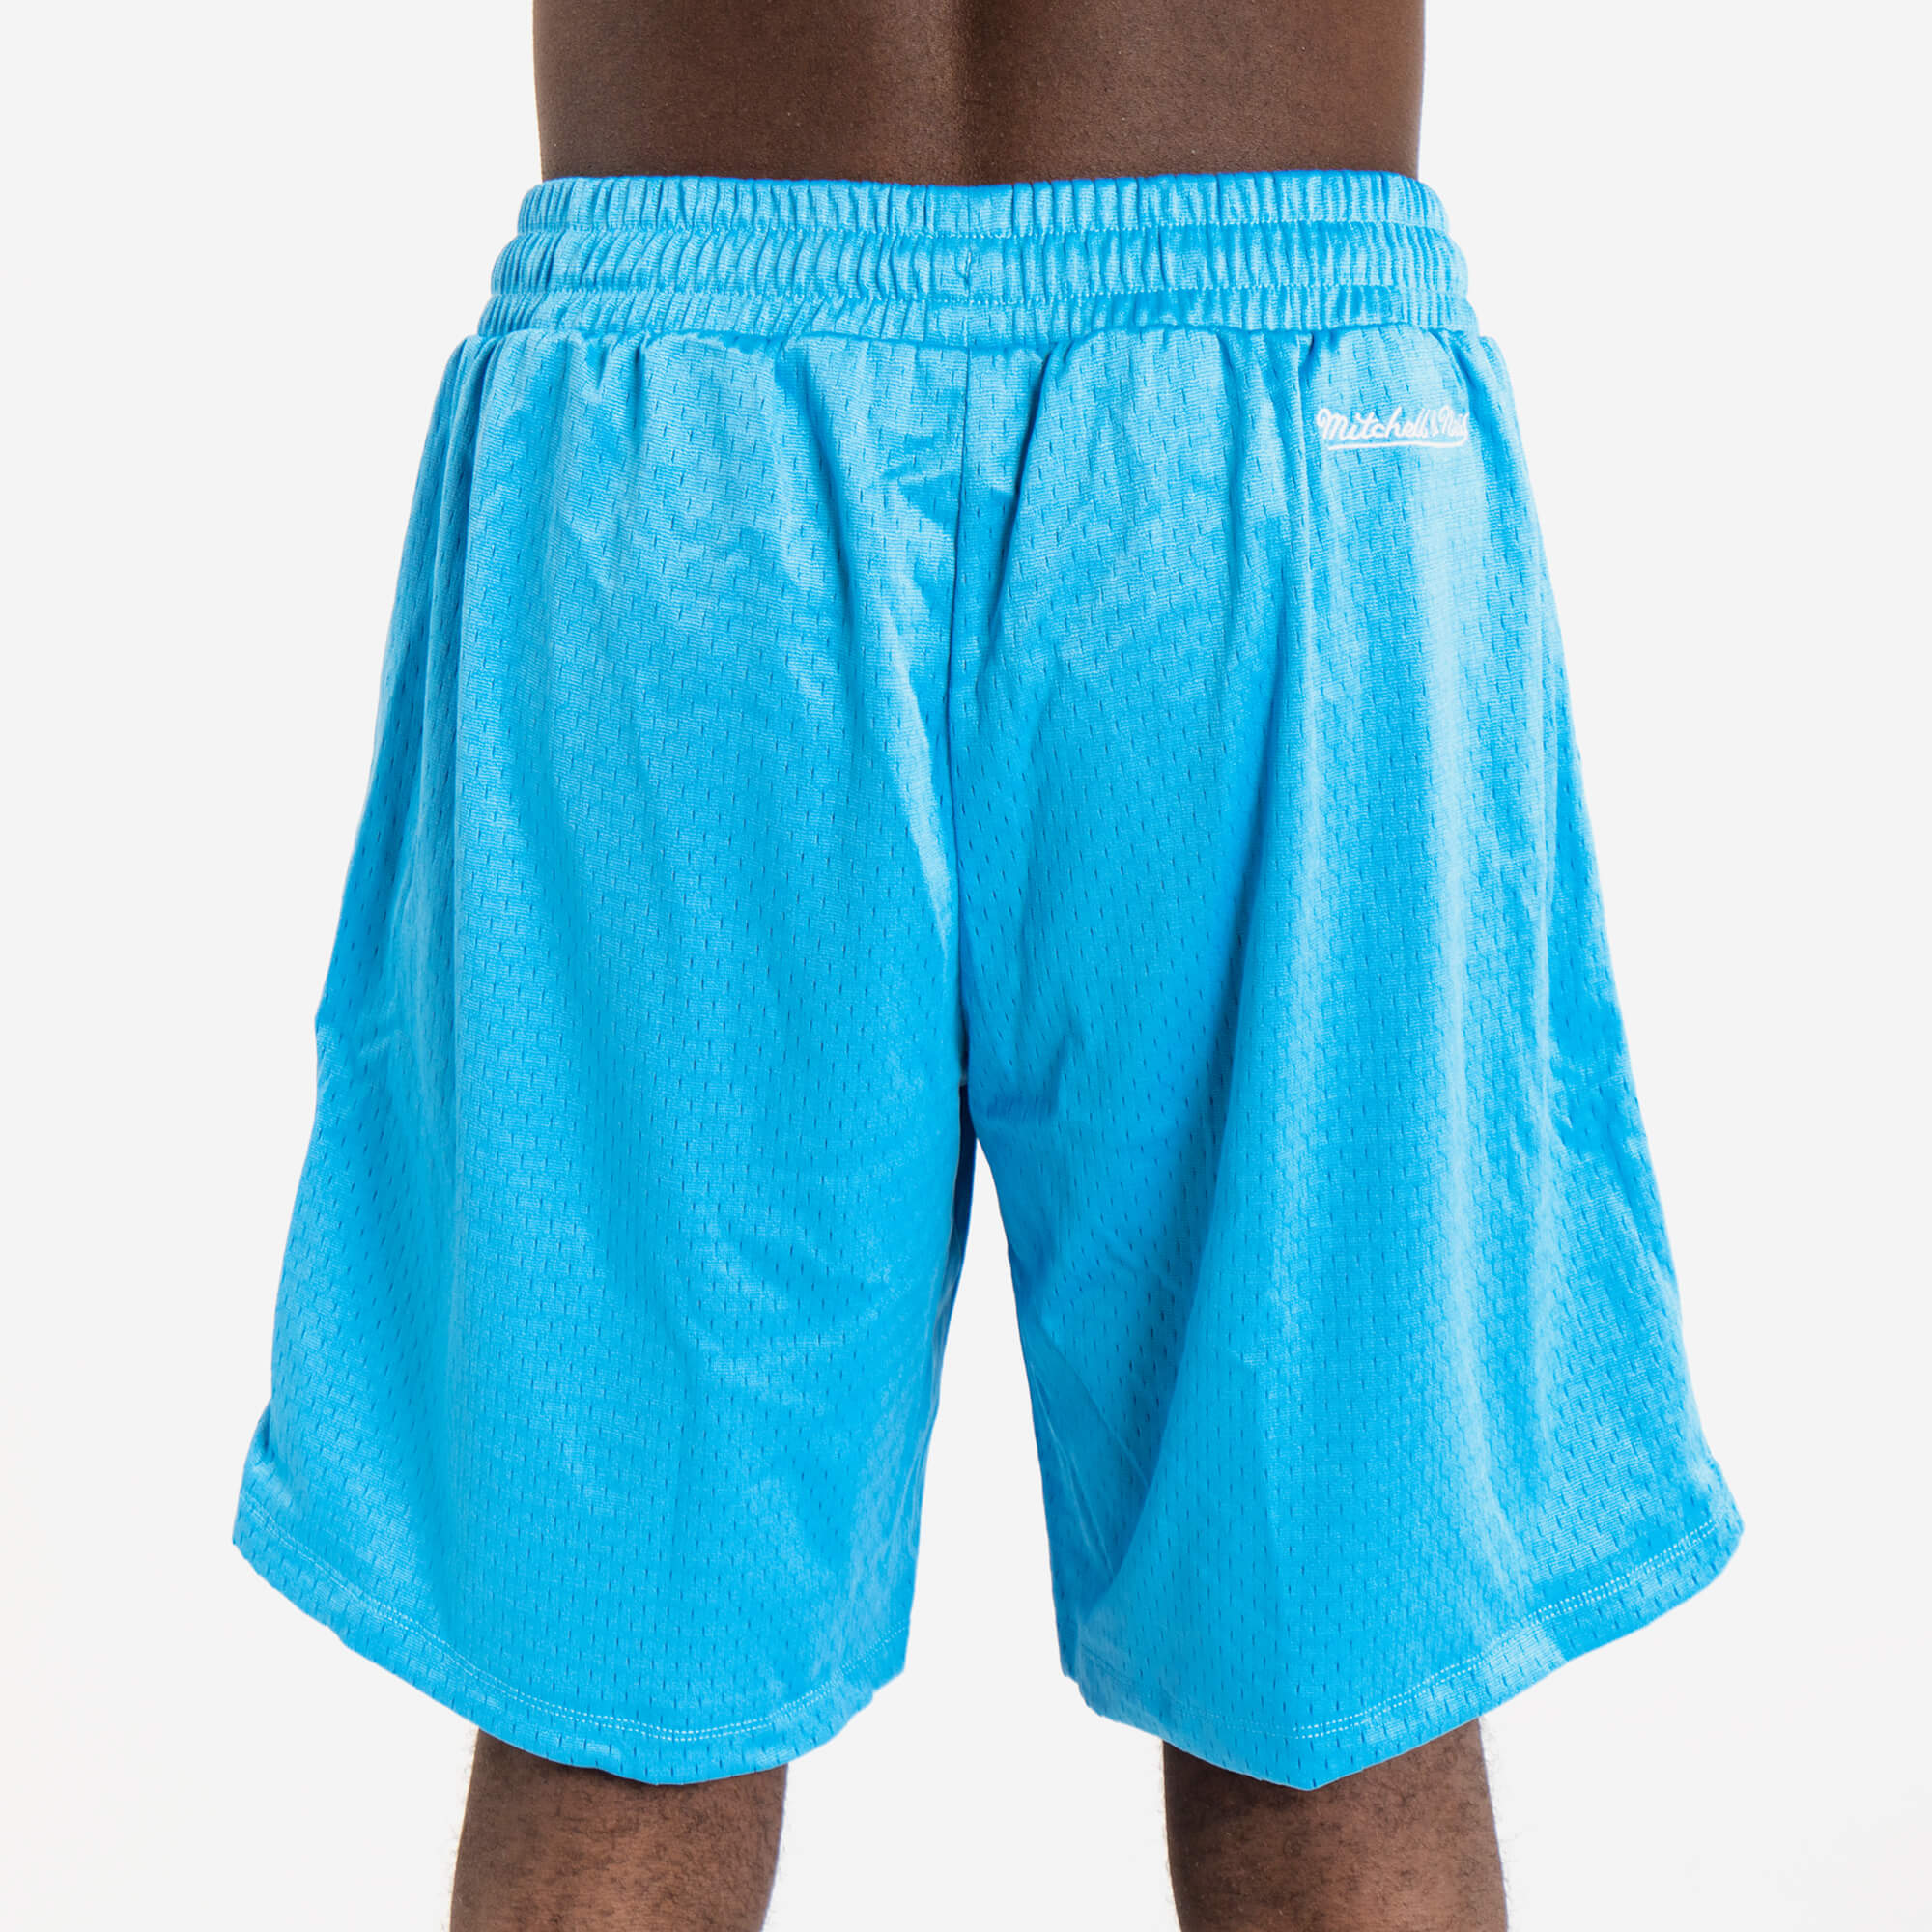 Mitchell & Ness University of North Carolina basketball shorts. Size M.